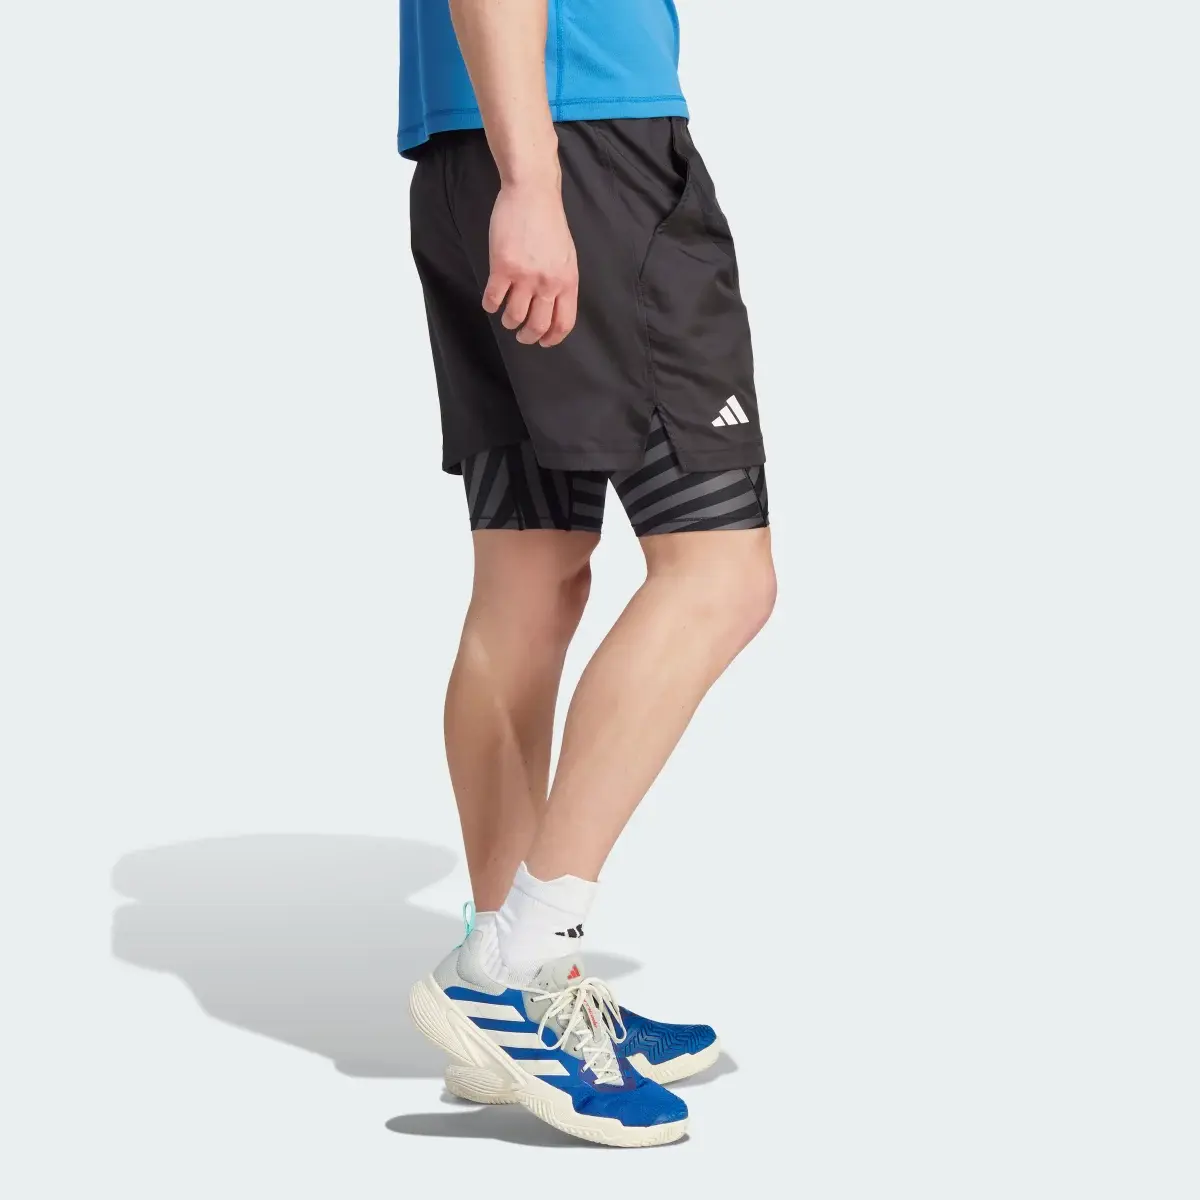 Adidas Shorts de Tenis AEROREADY Dos en Uno Pro. 3